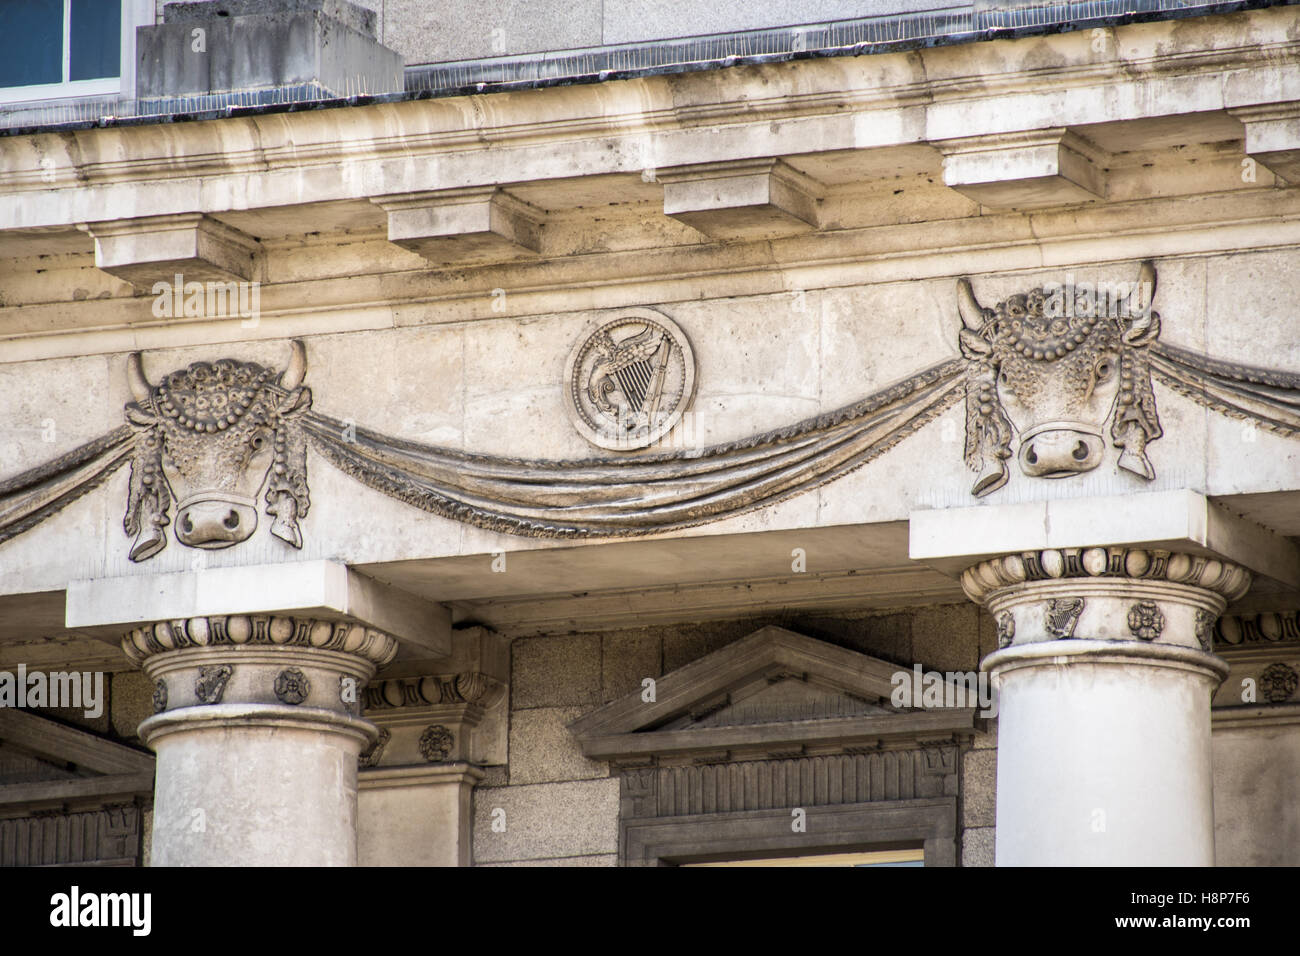 Dublino, Irlanda - Dettaglio di rilievi decorativi sulla parte esterna del Custom House in stile neoclassico edificio del XVIII secolo. Foto Stock